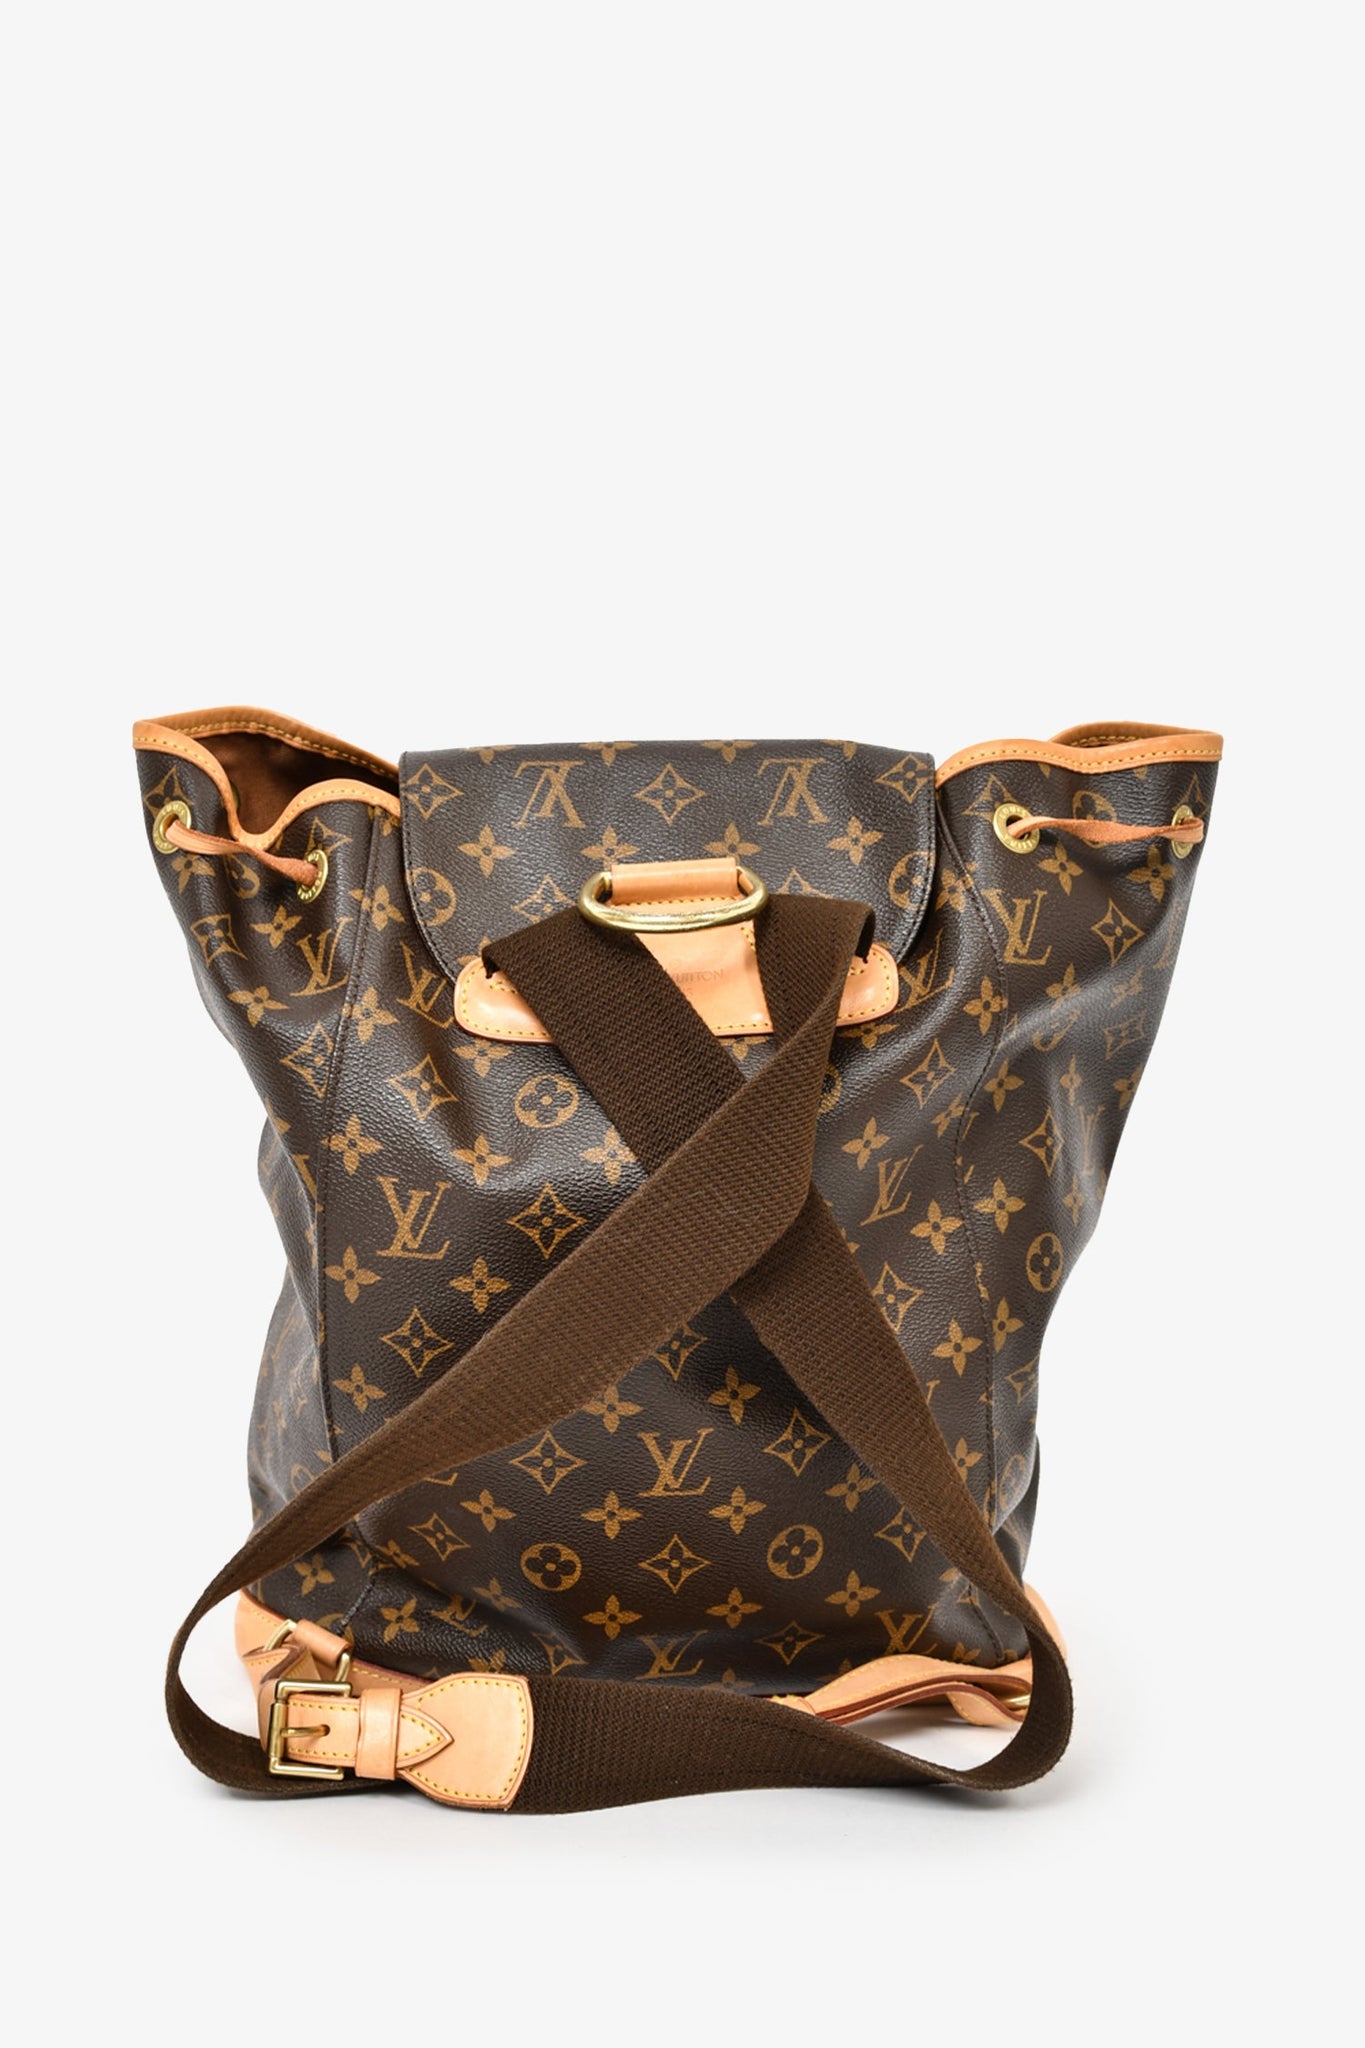 Authentic Louis Vuitton Montsouris MM backpack monogram